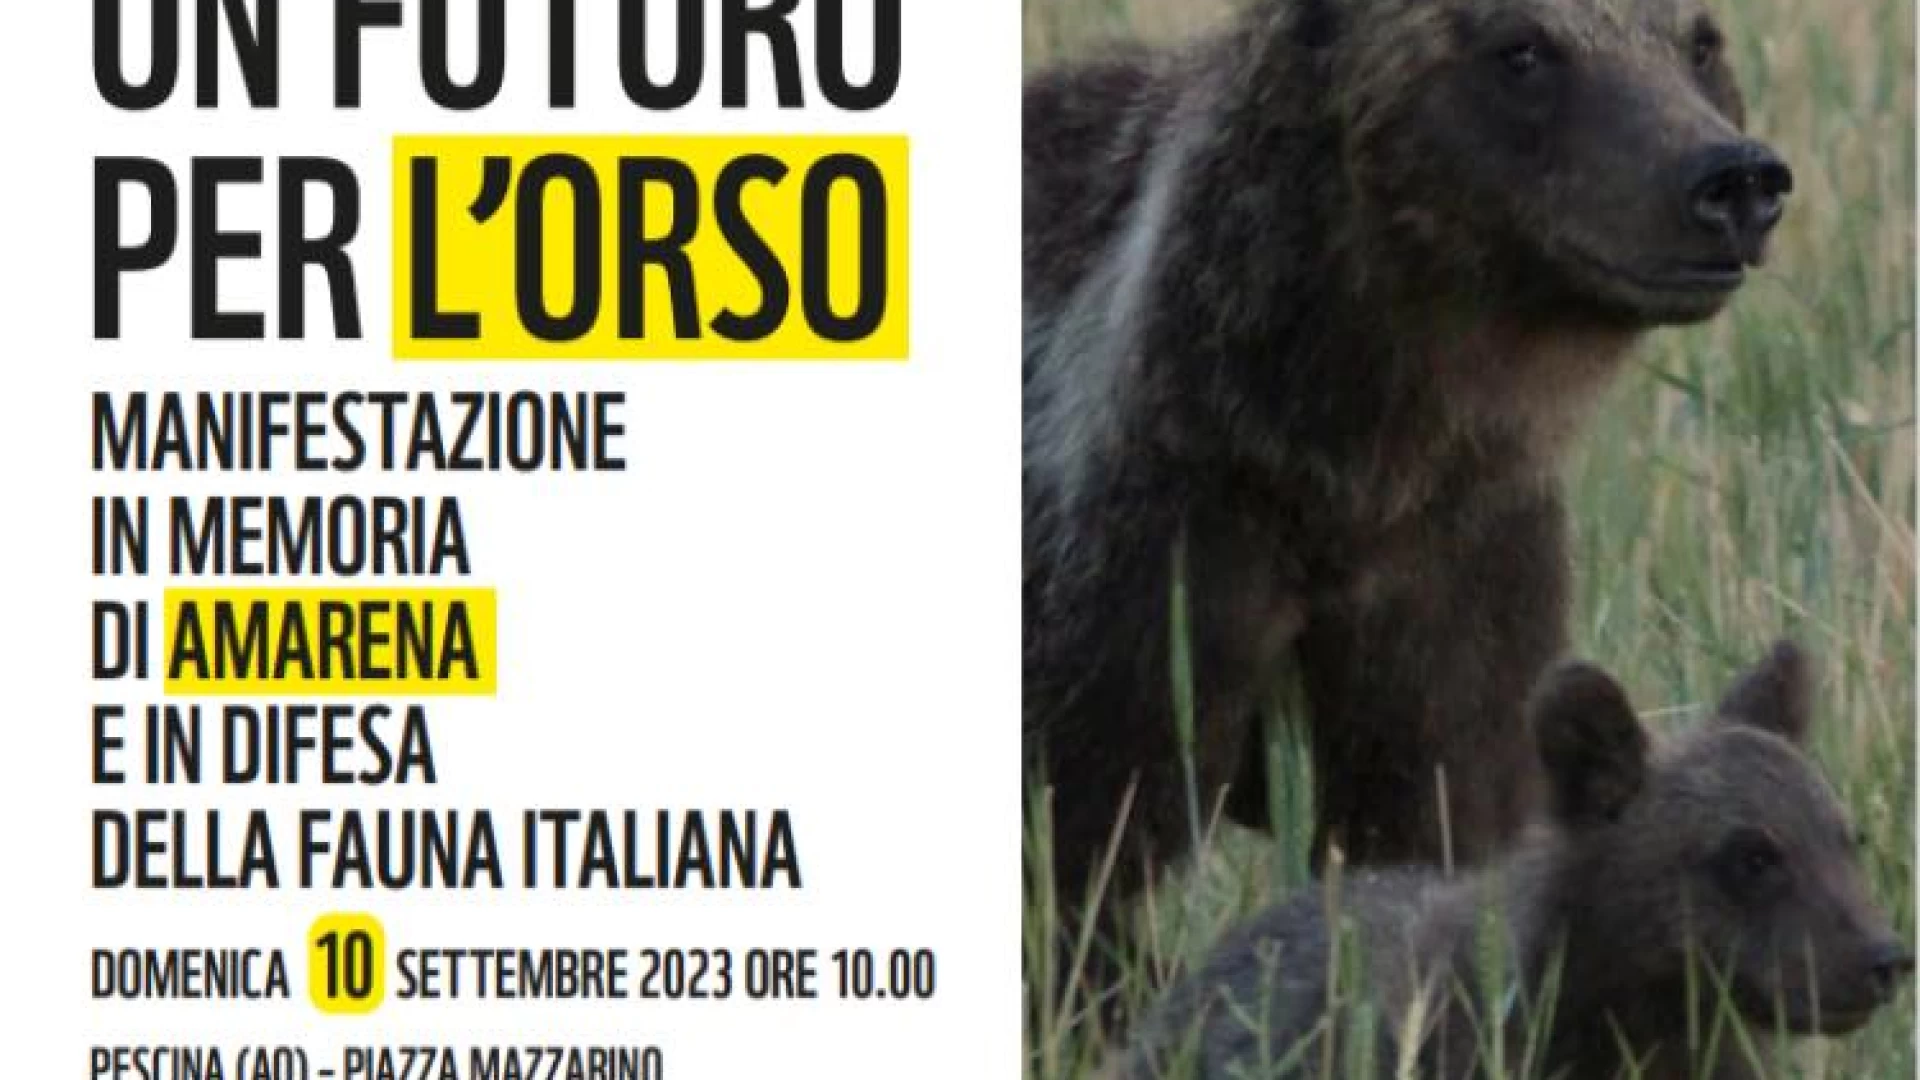 Rewilding Apennines aderisce alla manifestazione “Un futuro per l’orso”